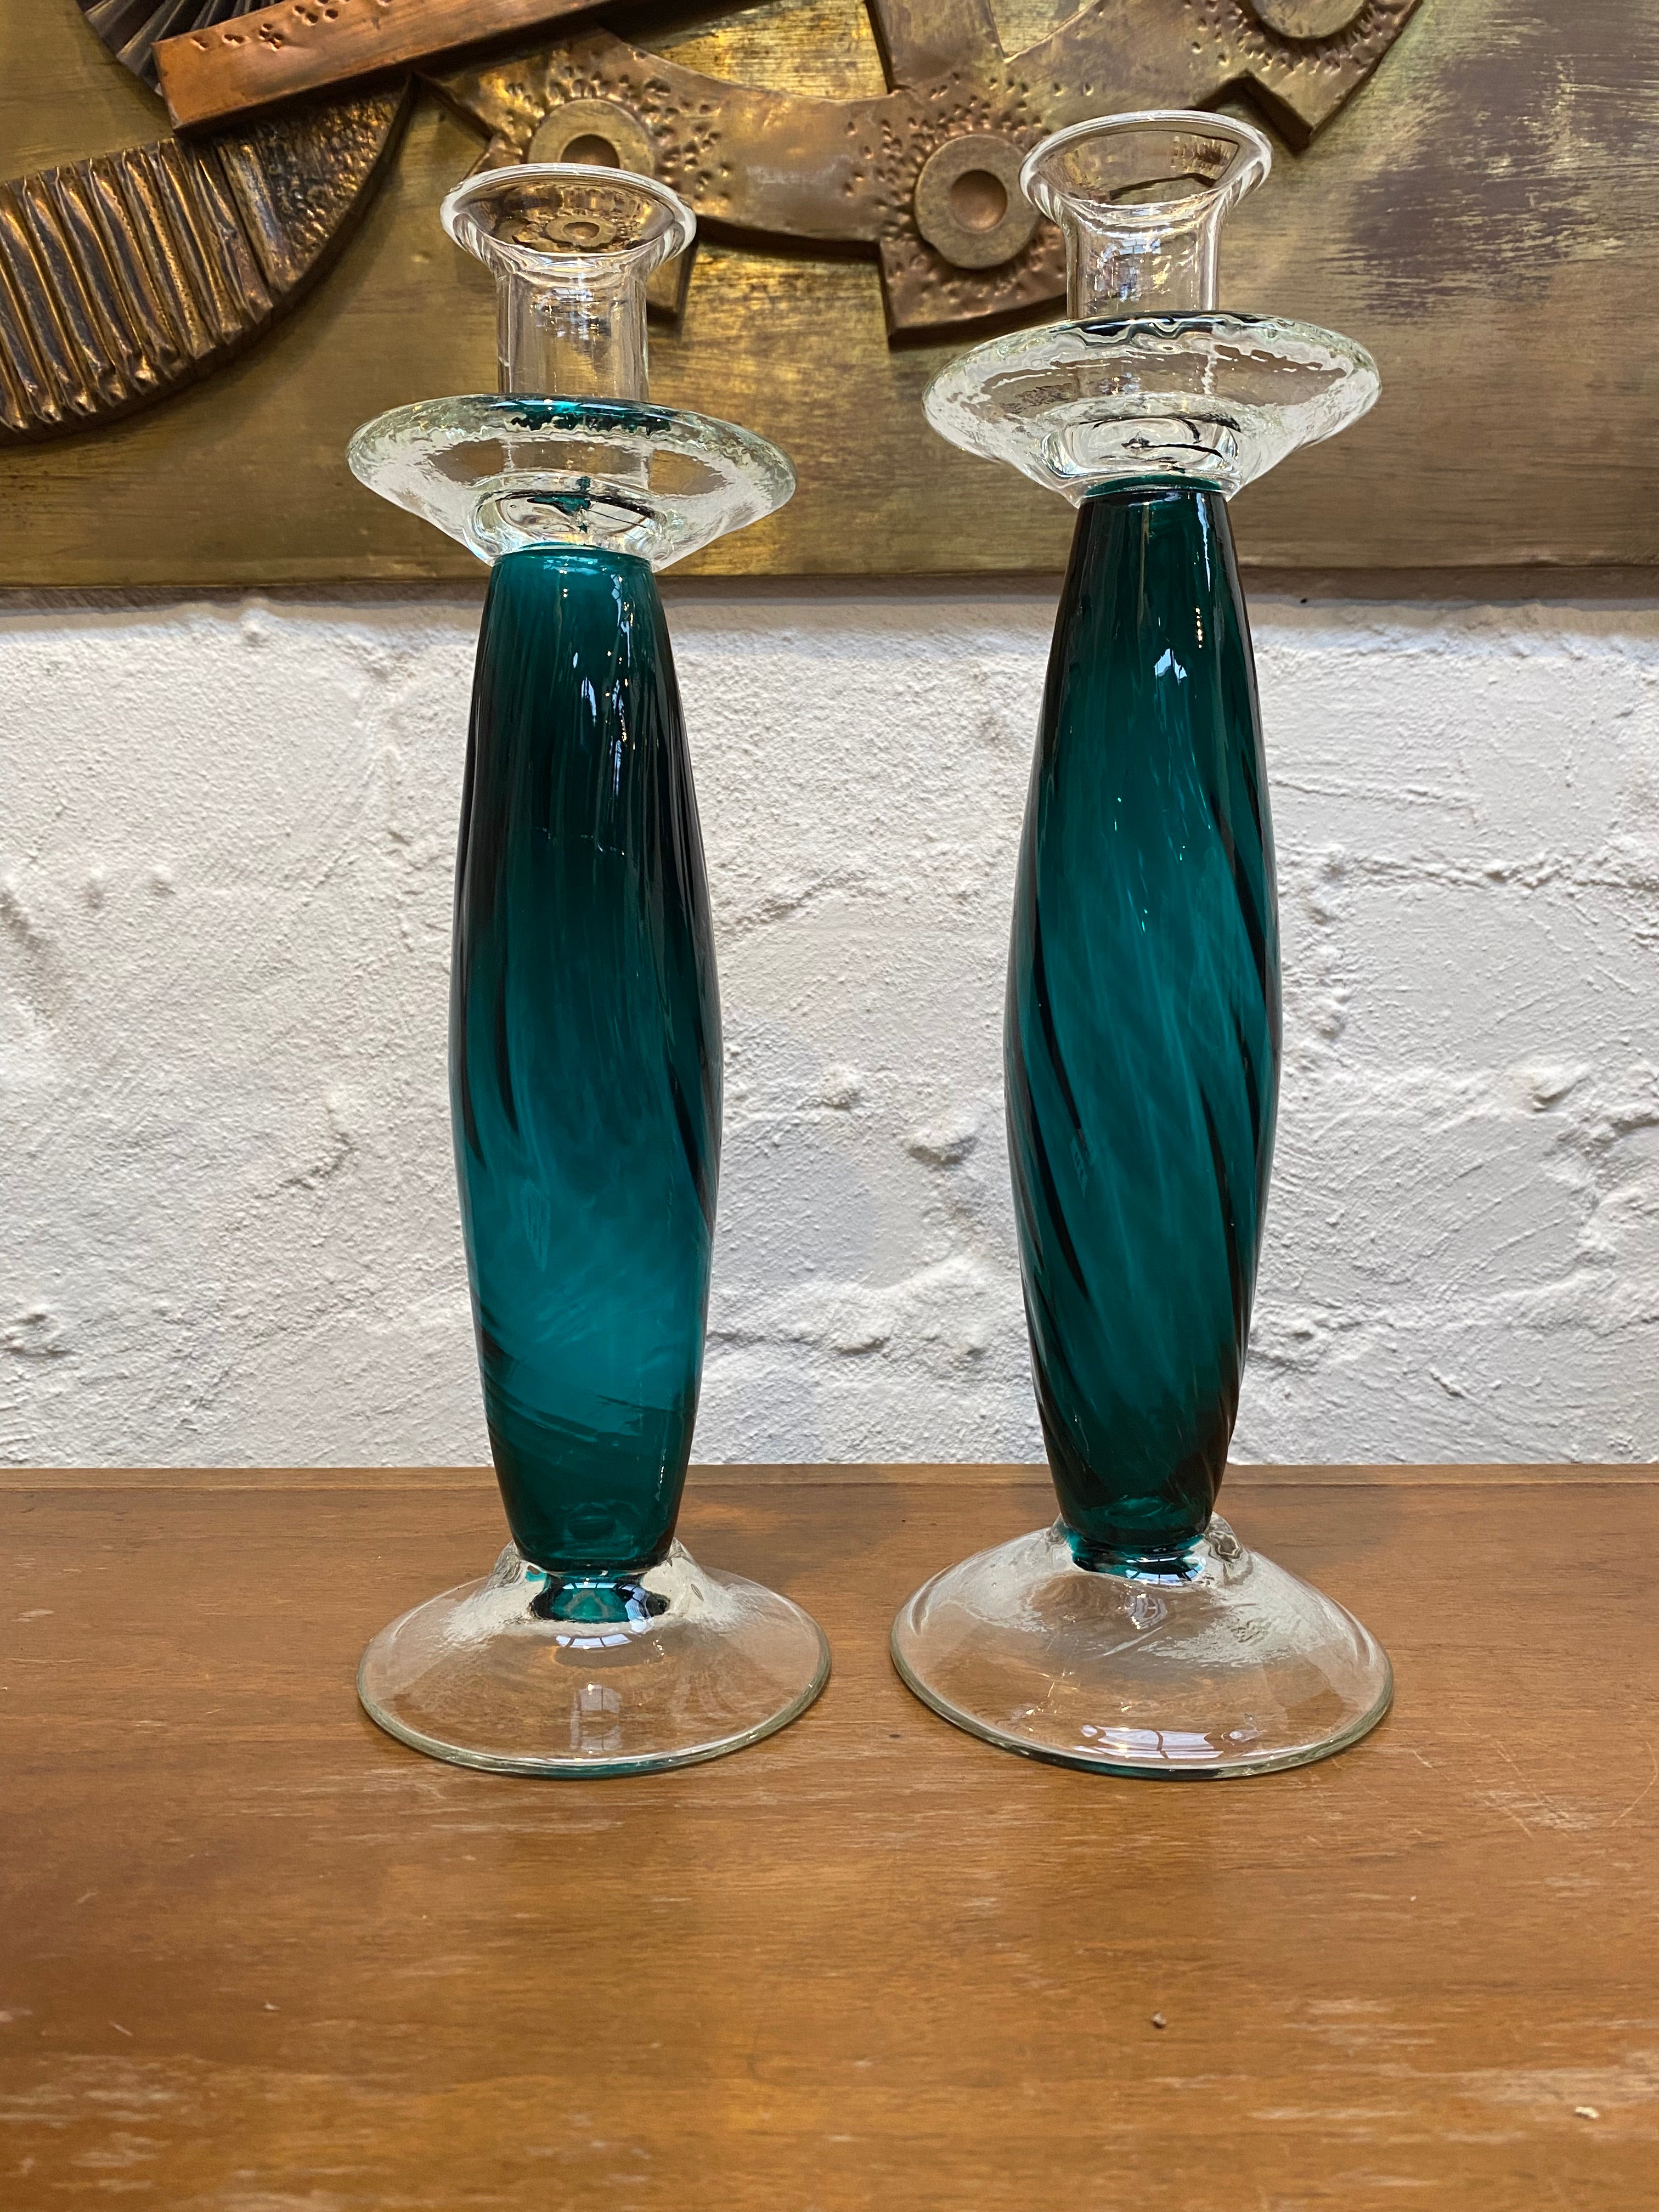 Une paire de chandeliers très romantiques des années 1980 dans le style Empoli - audacieux et généreux.  

Très jolies tiges de ballon en verre de couleur sarcelle avec un motif en spirale, terminées par un porte-bougie en verre transparent et un